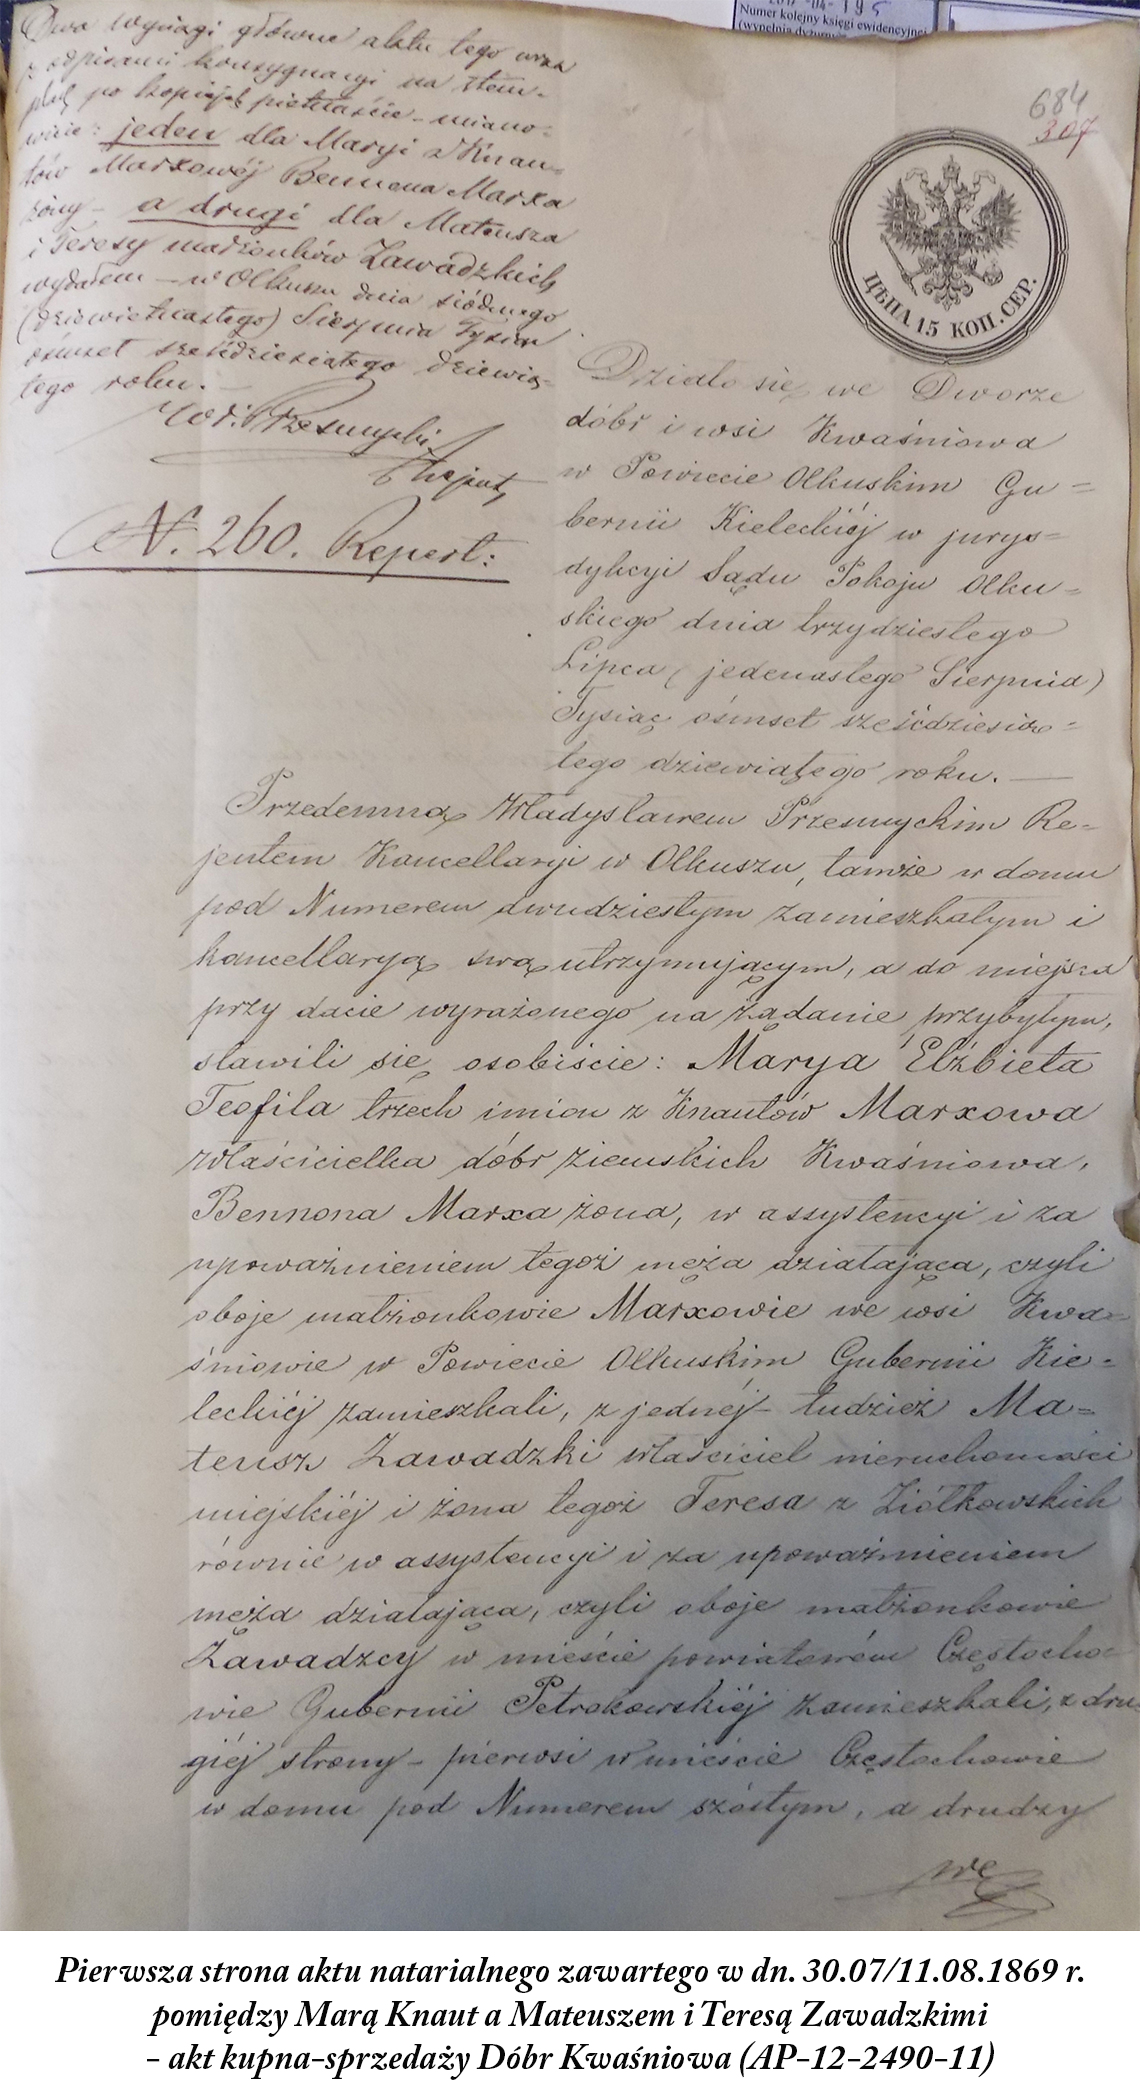 Maria Knaut & Mateusz i Teresa Zawadzcy - akt sprzedaży Dóbr Kwaśniowa 1869 r.